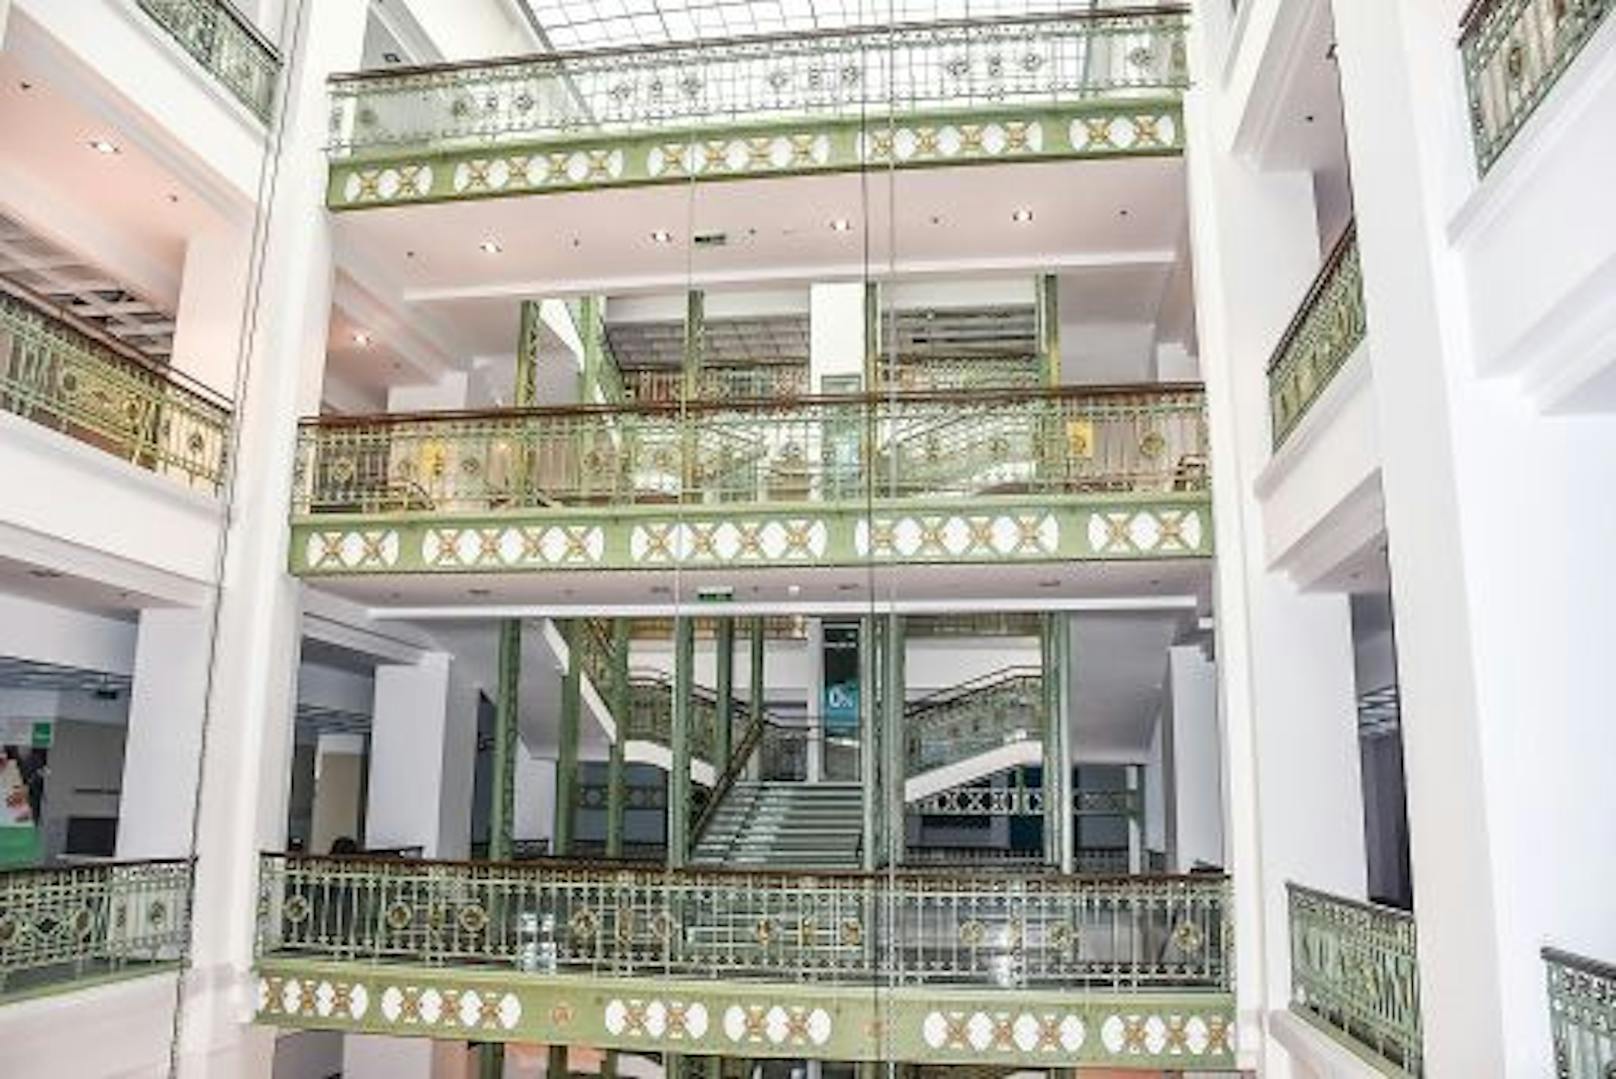 Zum Abschluss eines der größten Auktionsprojekte Österreichs wird mit dem Treppengeländer nun eine besondere Rarität für den guten Zweck versteigert.